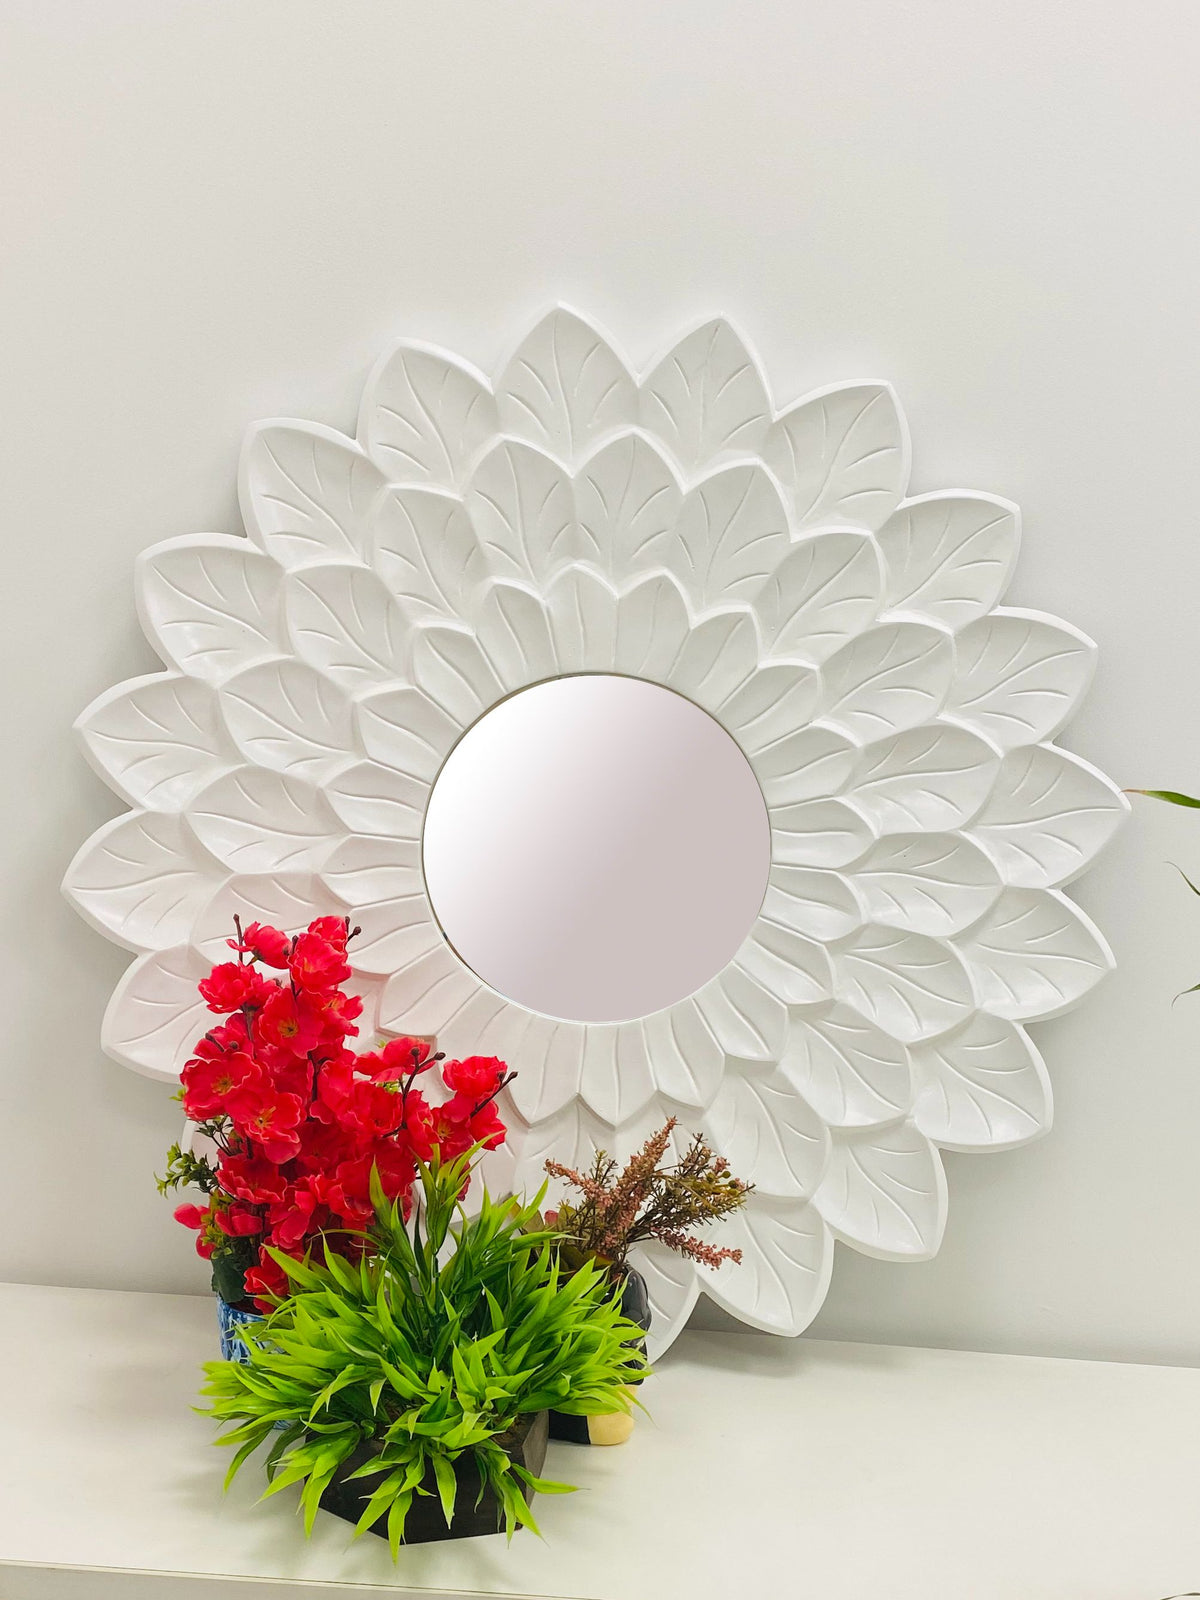 White Daisy Decorative Mirror